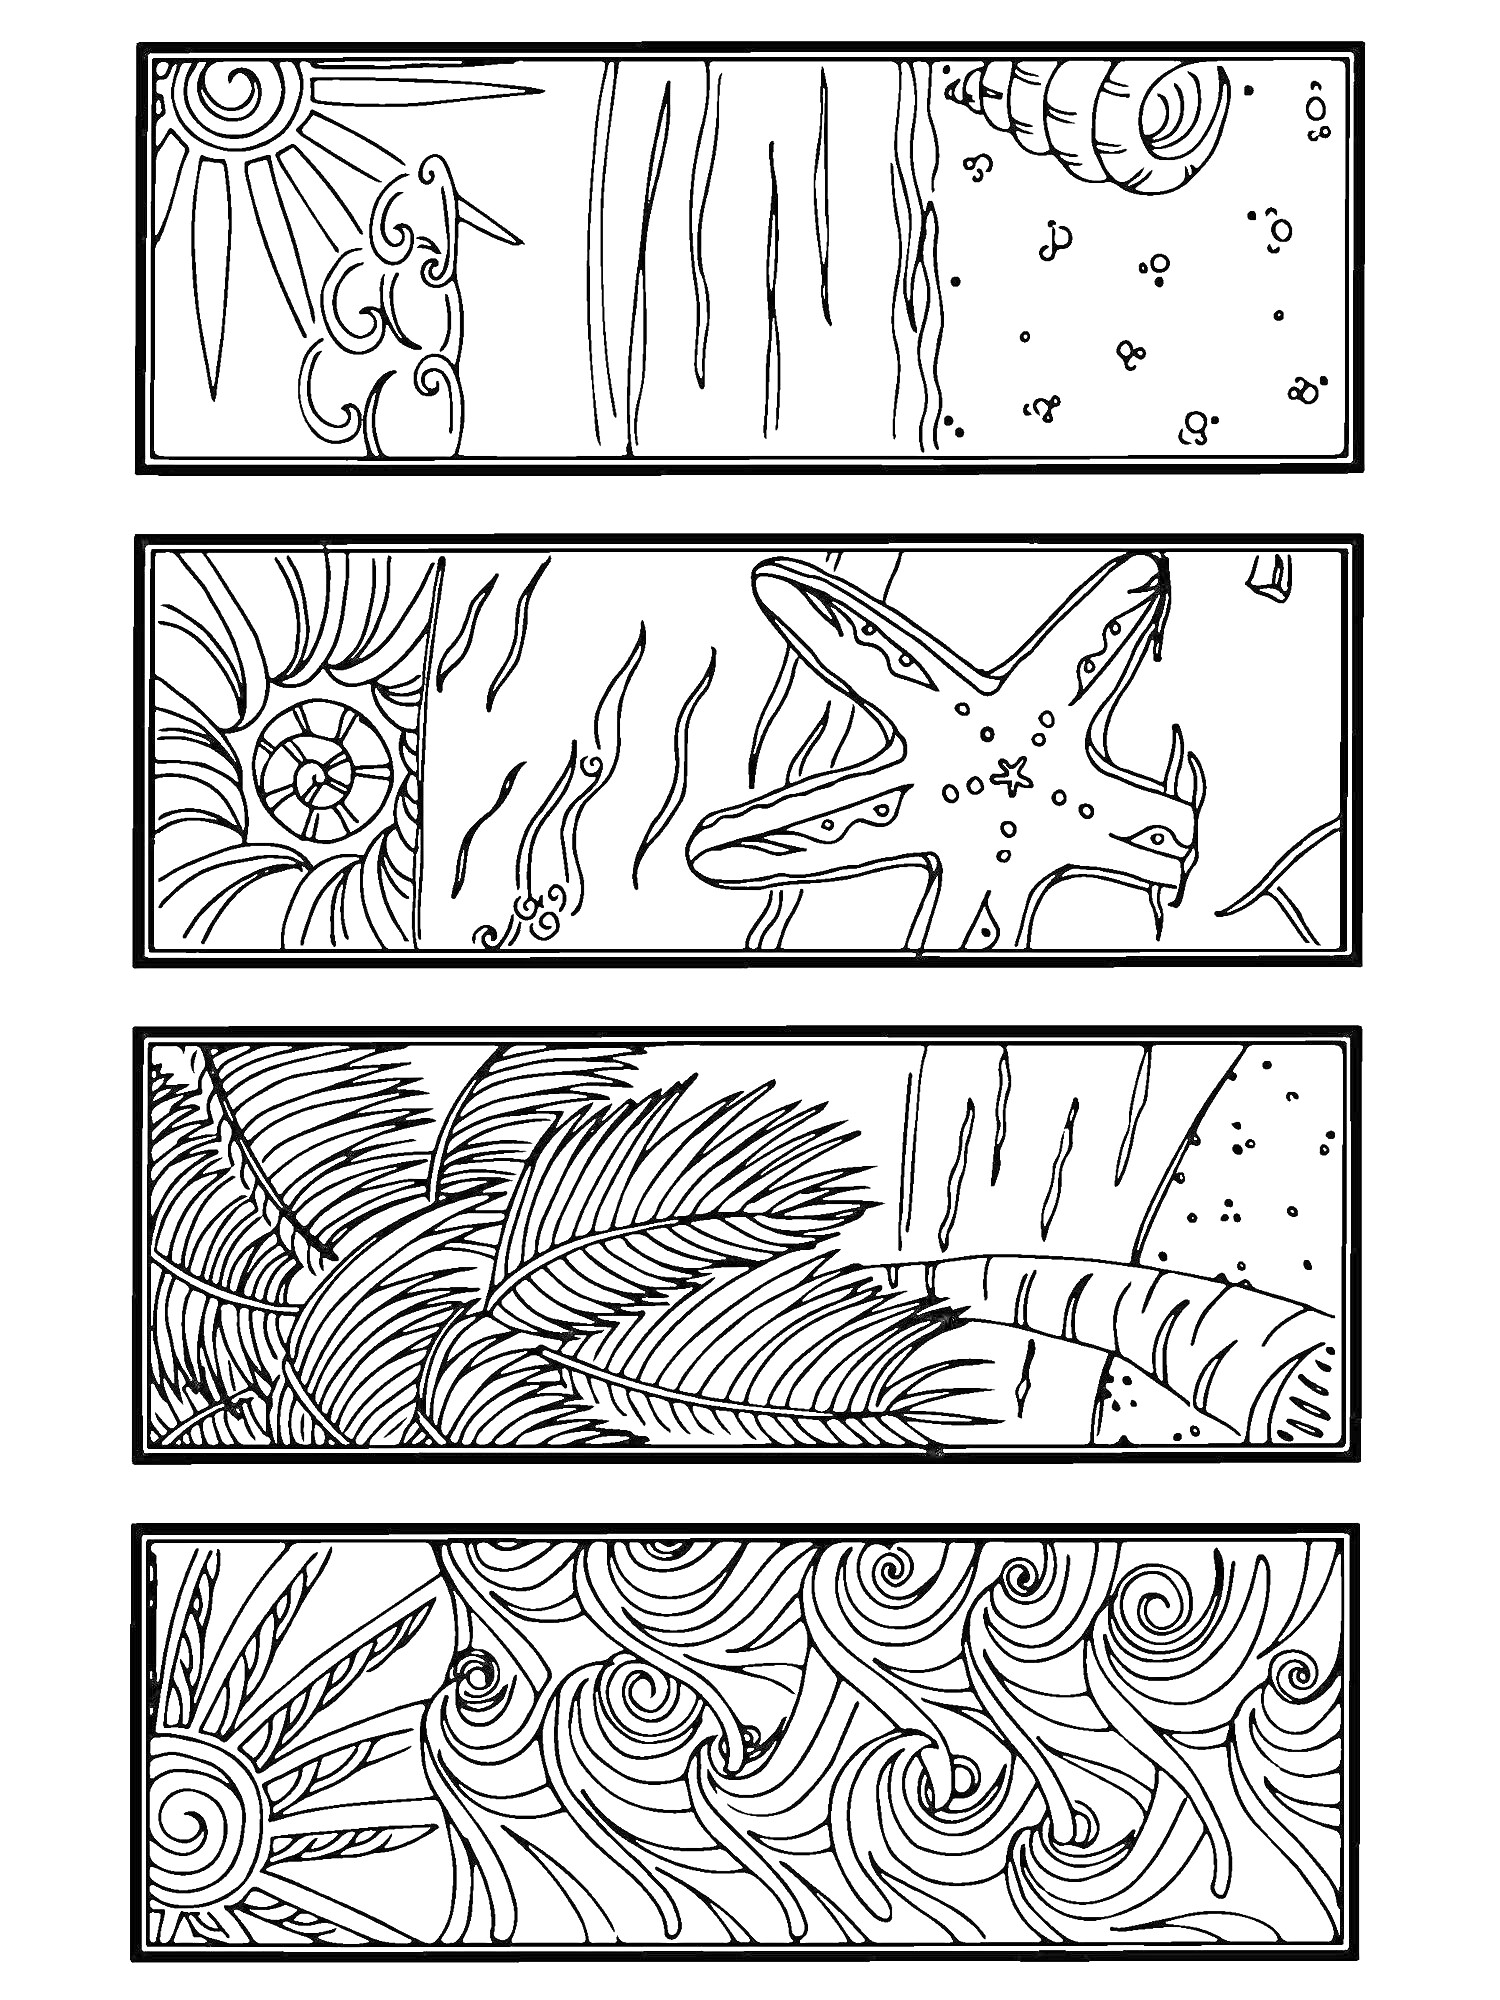 Раскраска Морские закладки с солнцем, пальмой, морской звездой, морской ракушкой, волнами и песком